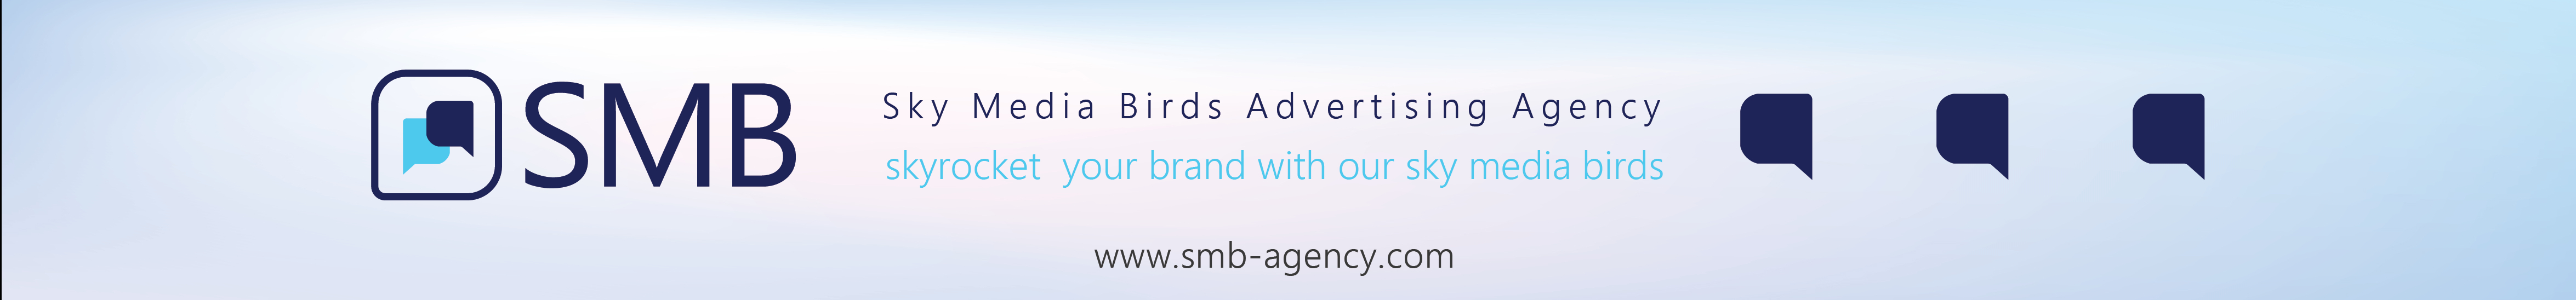 Sky Media Birds's profile banner